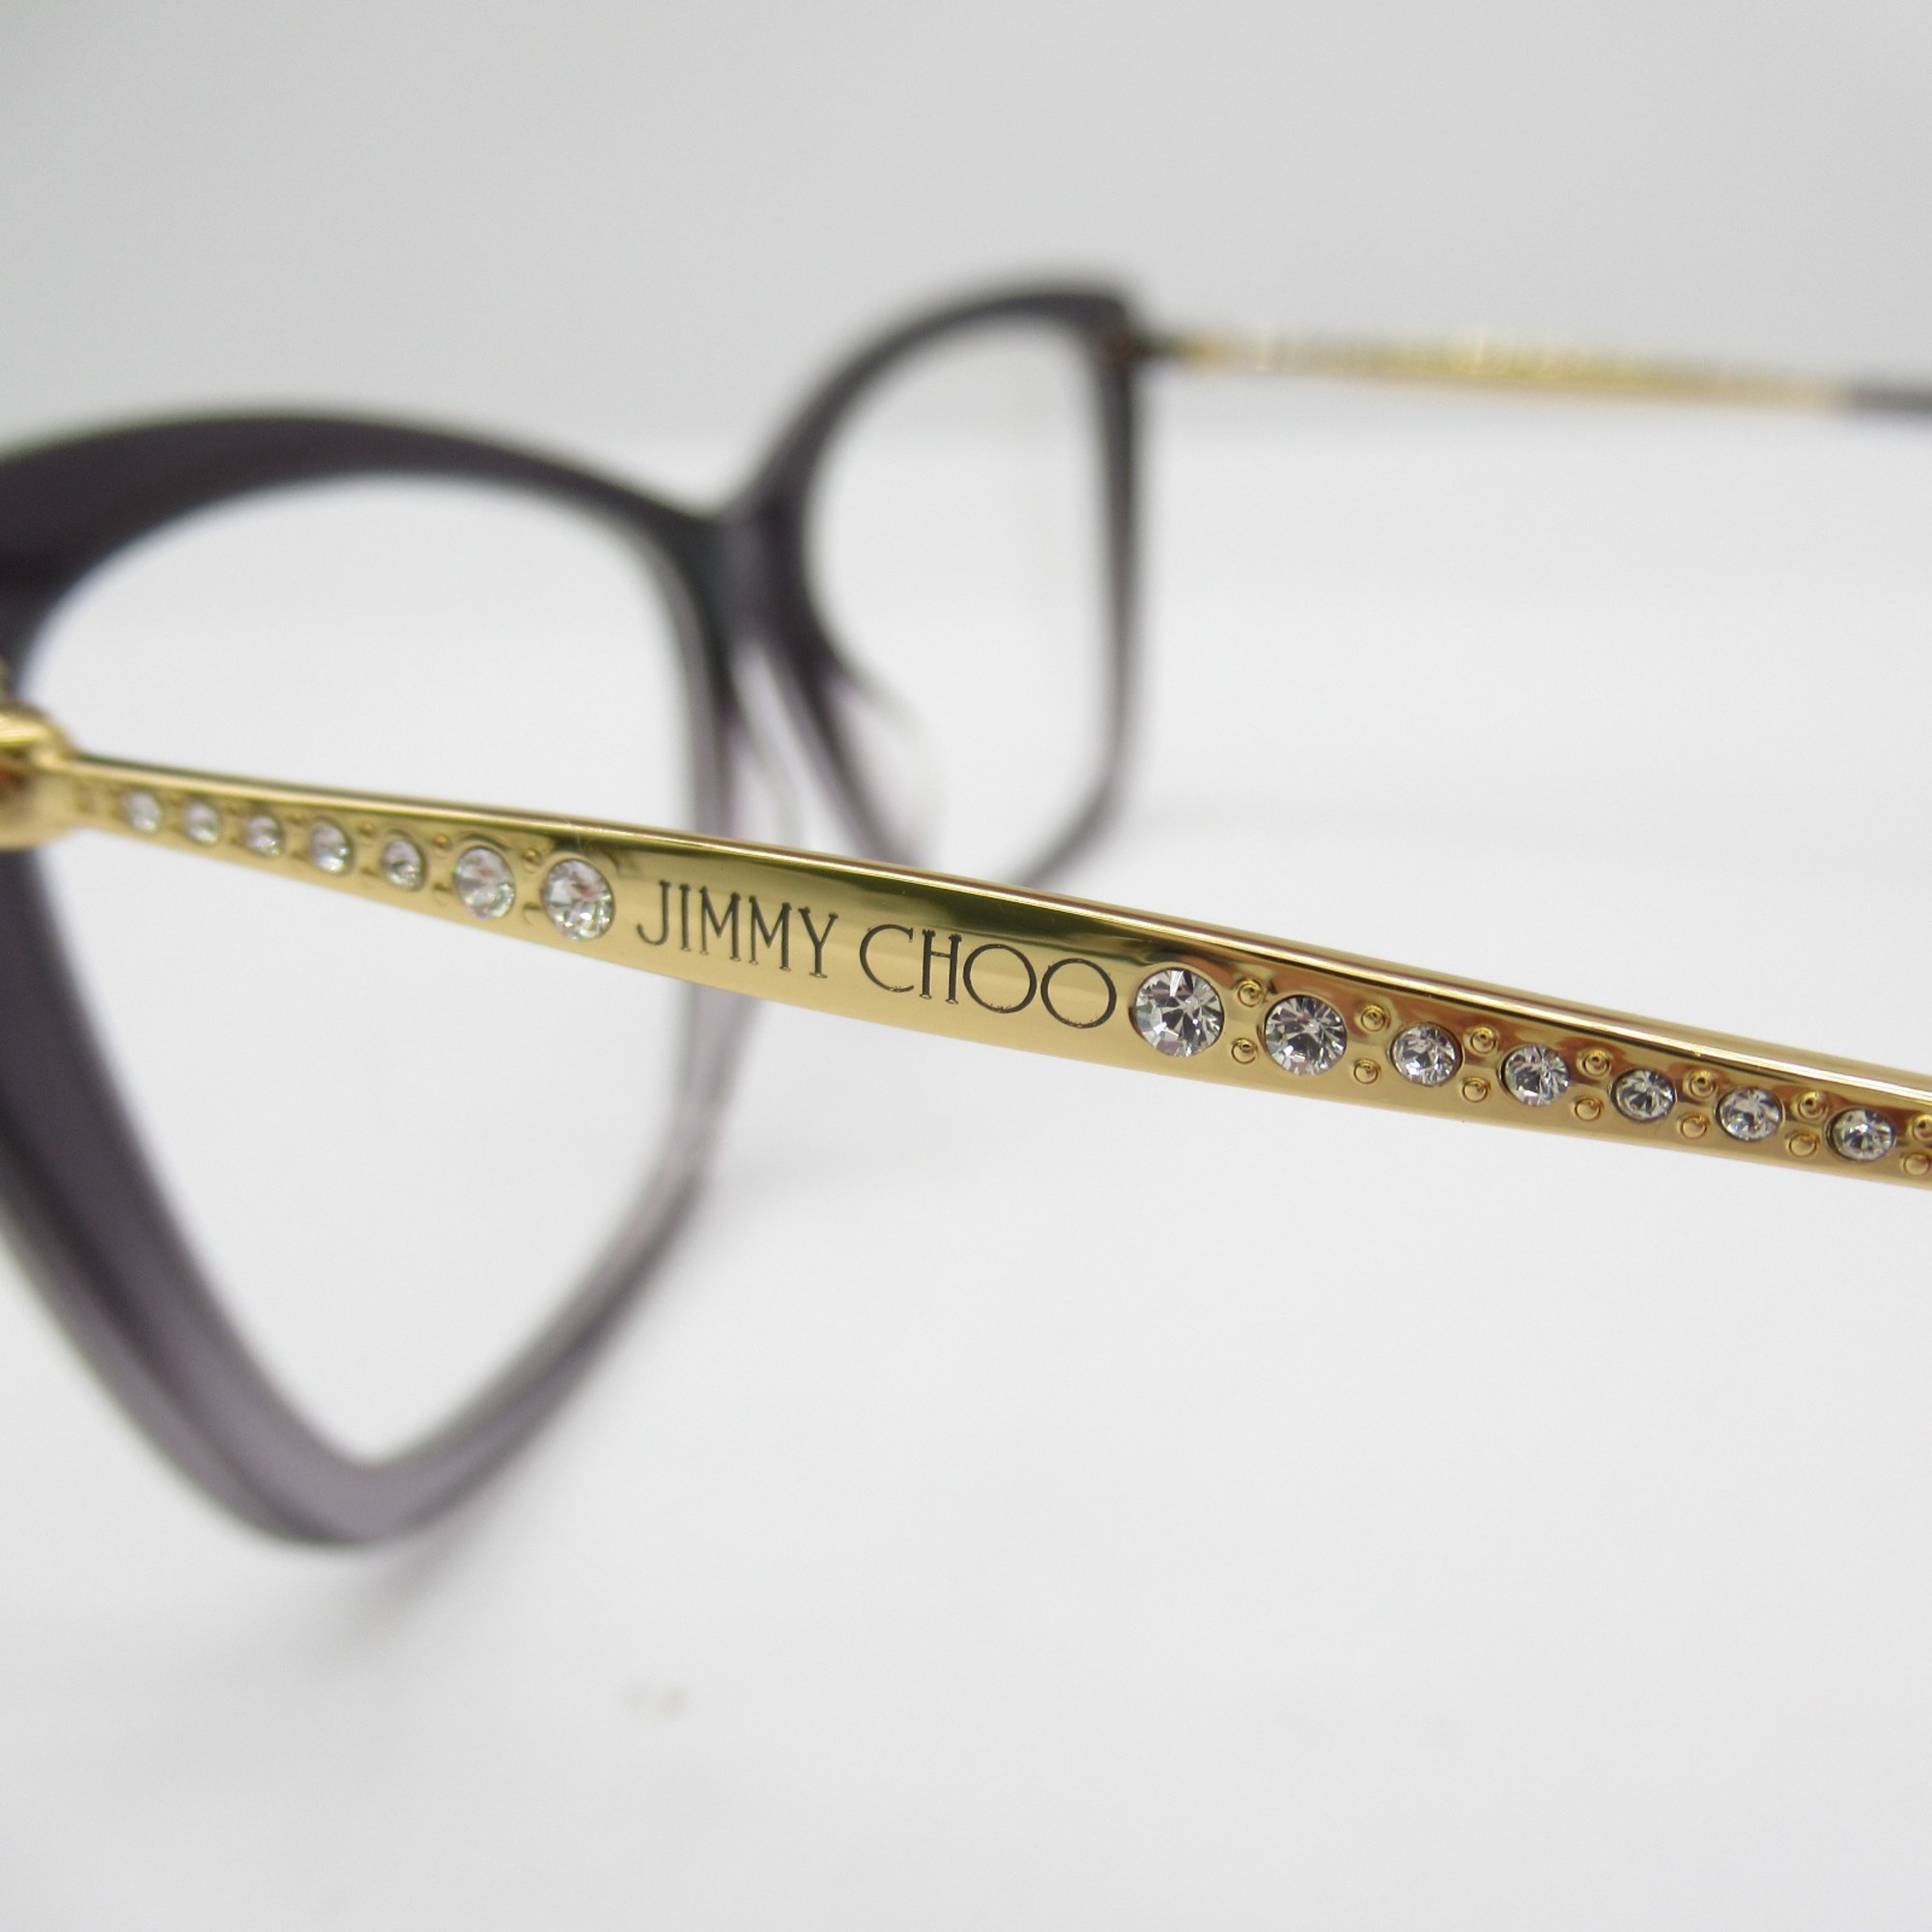 JIMMY CHOO Date Glasses Glasses Frame Black Stainless Steel Plastic 297 KB7(54)